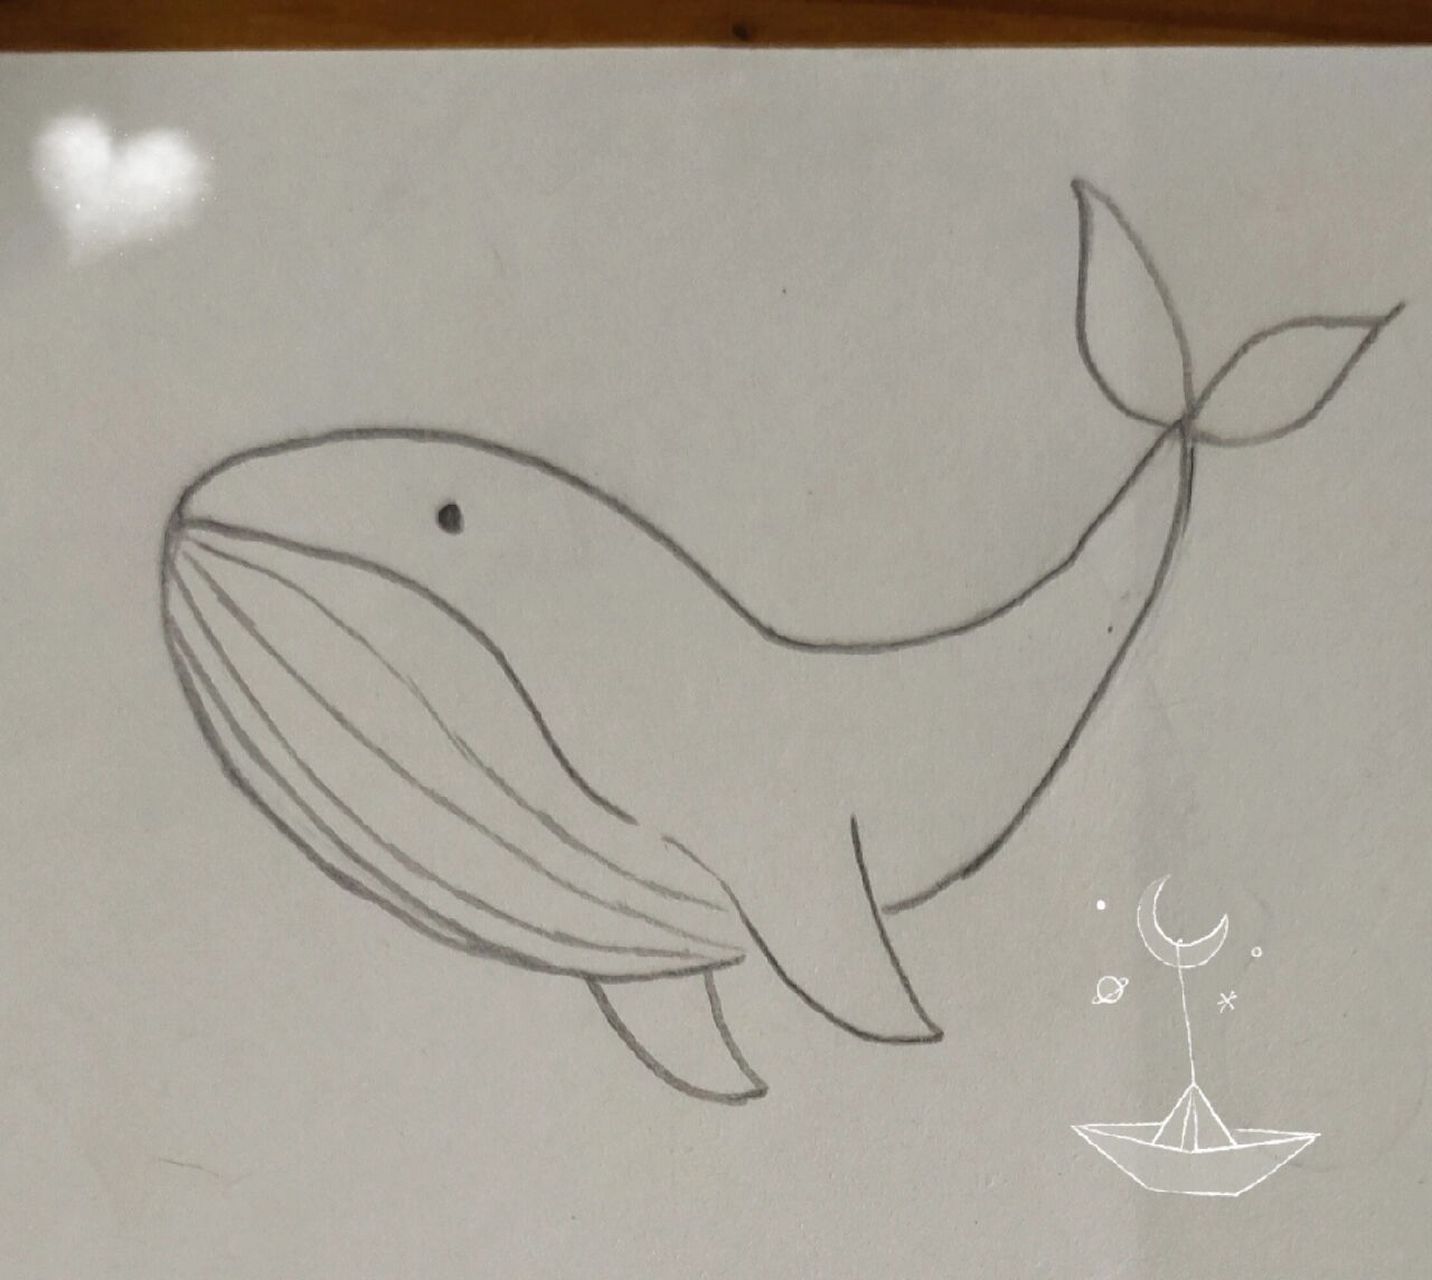 鲸简笔画简单图片